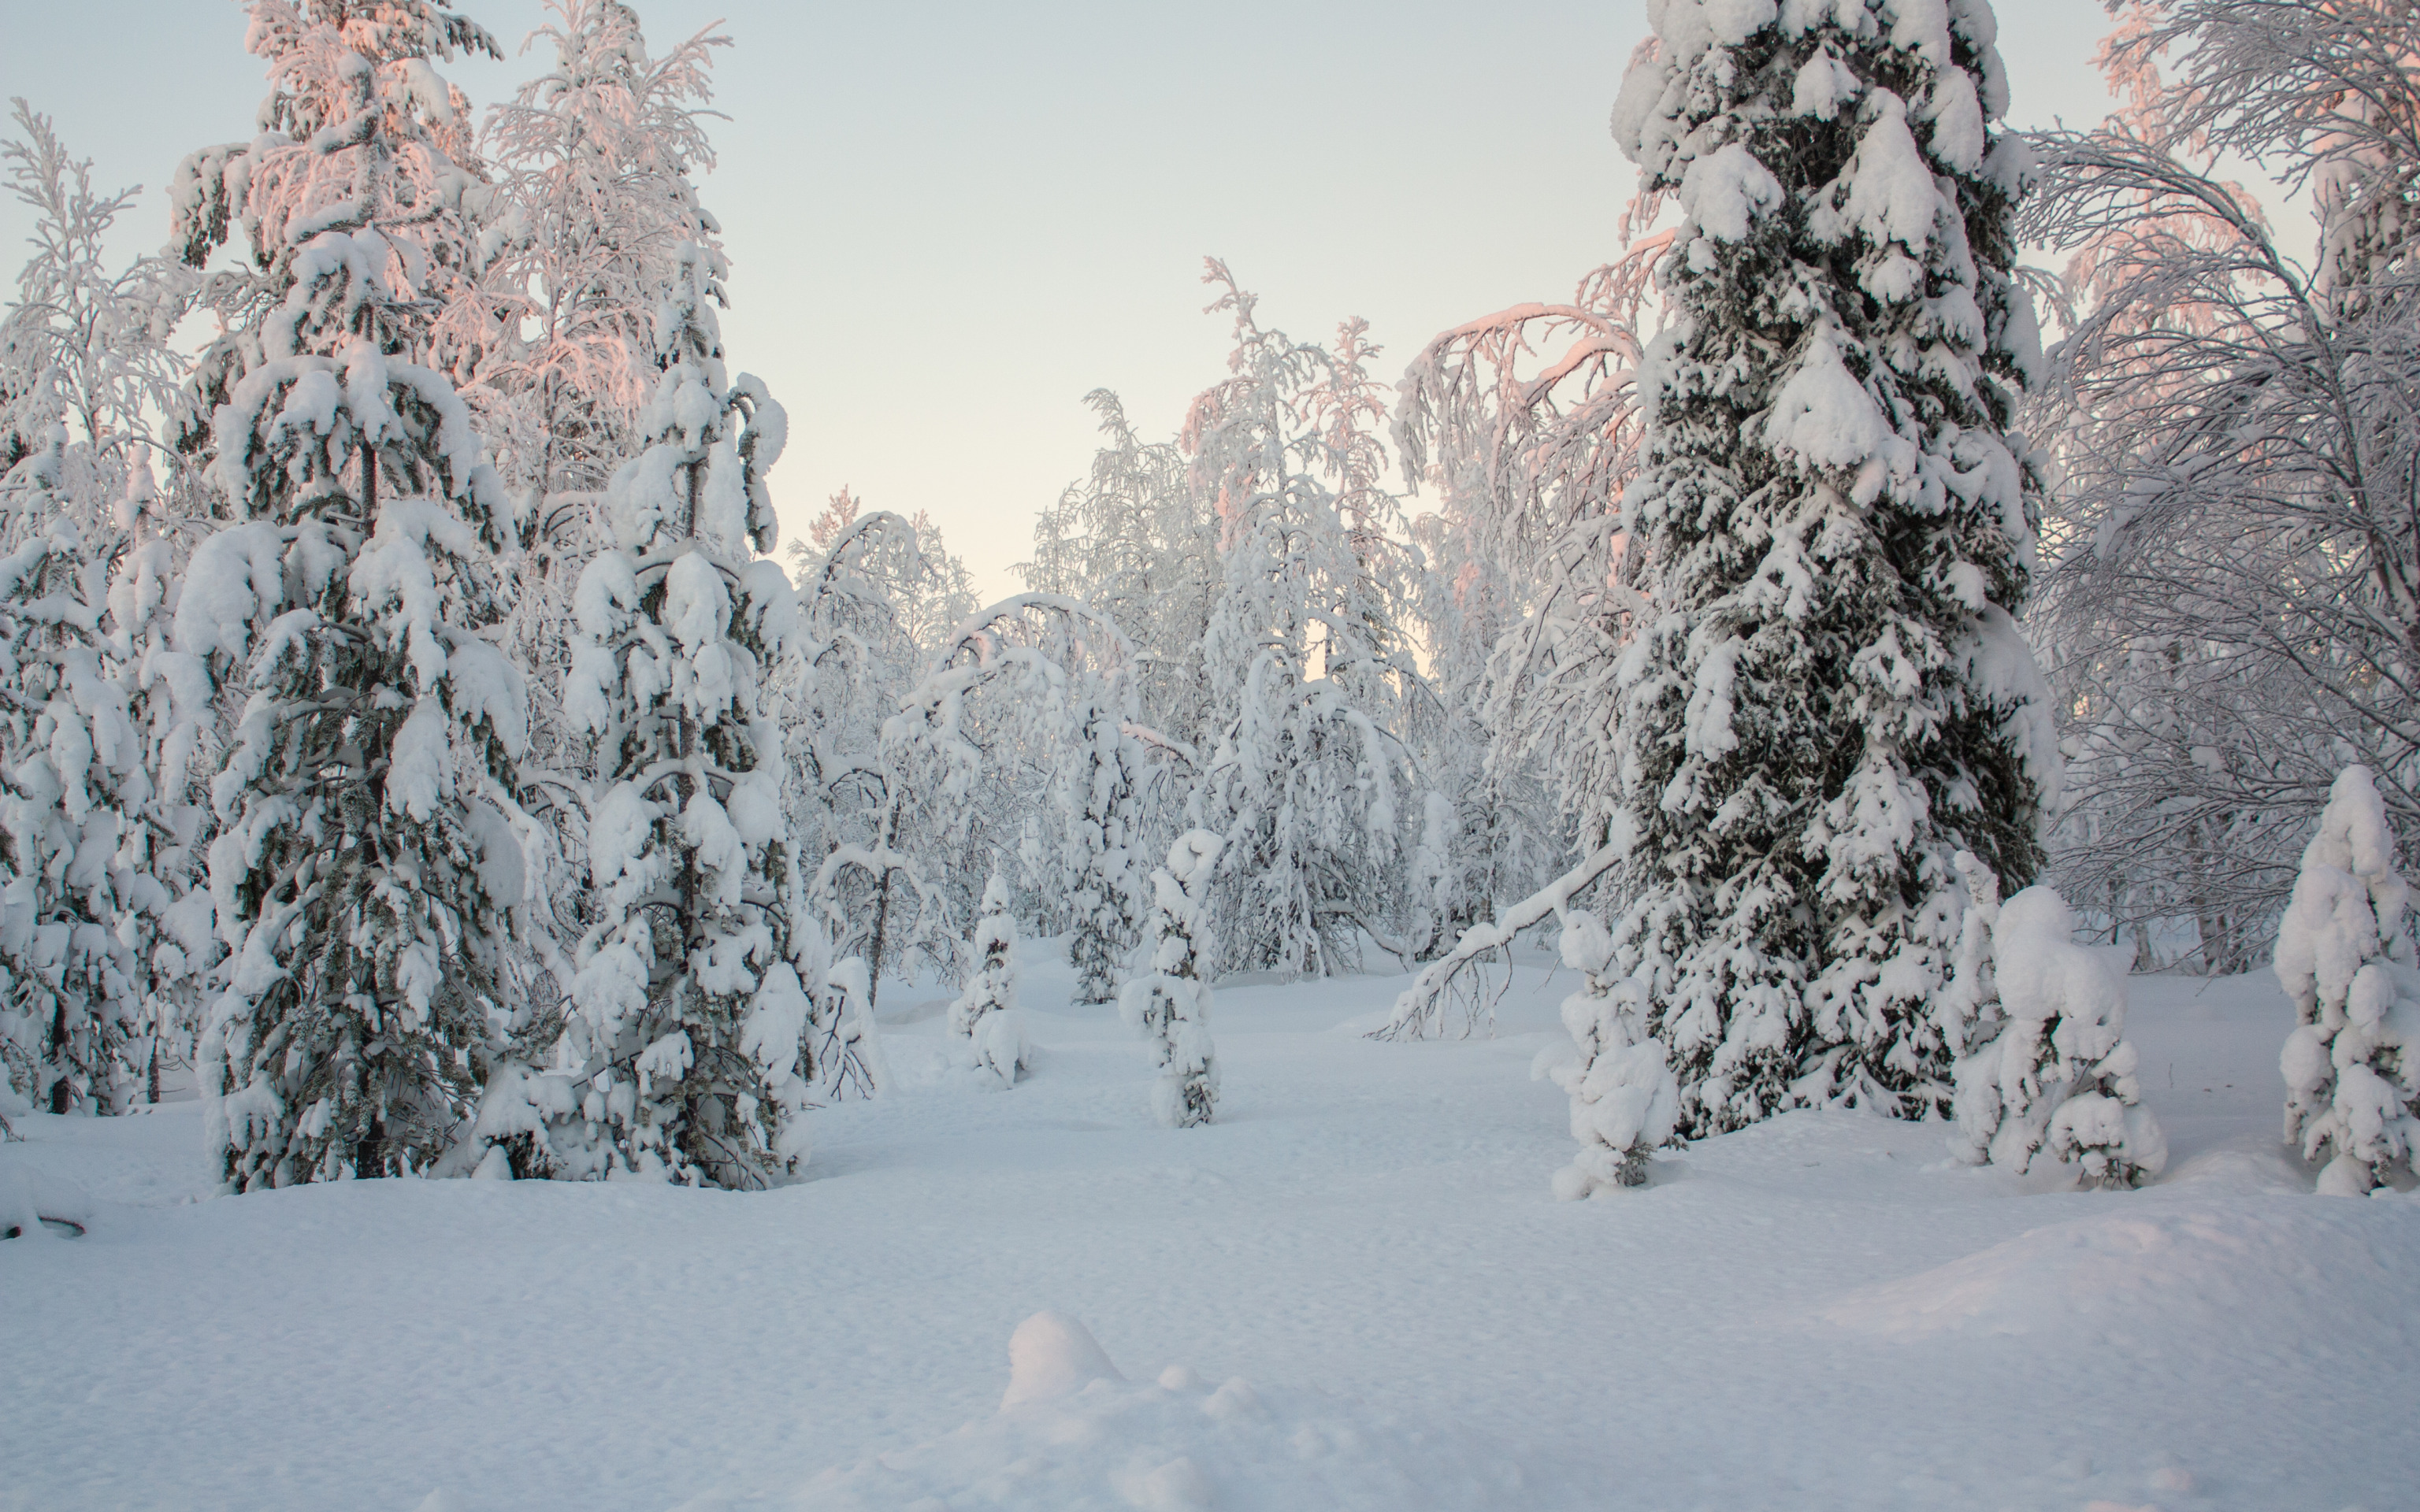 Русские Морозы лес. Мороз в лесу. Зимний лес весь шапкой Принакрылся чудной. Иркутск лес зима Мороз.